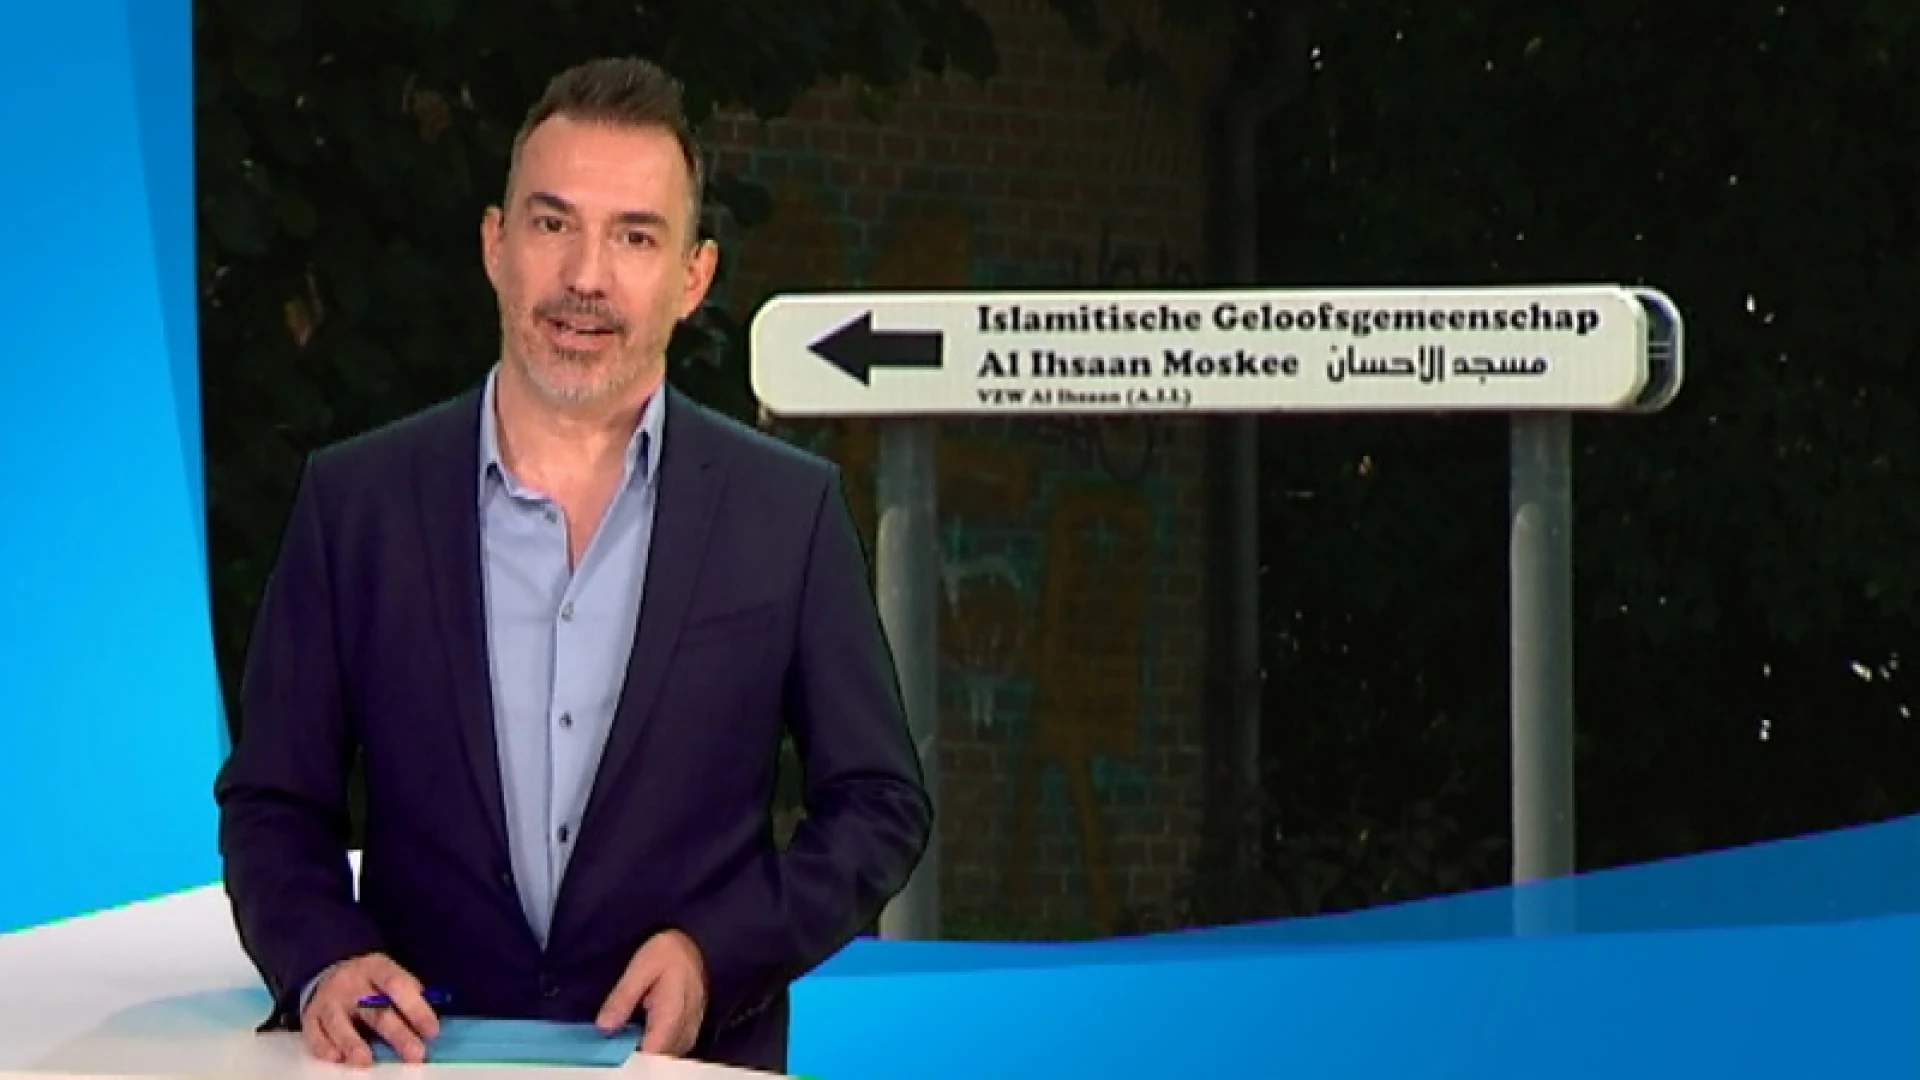 Minister van Justitie Koen Geens beschouwt Leuvense Al Ihsaan-moskee niet als extremistisch